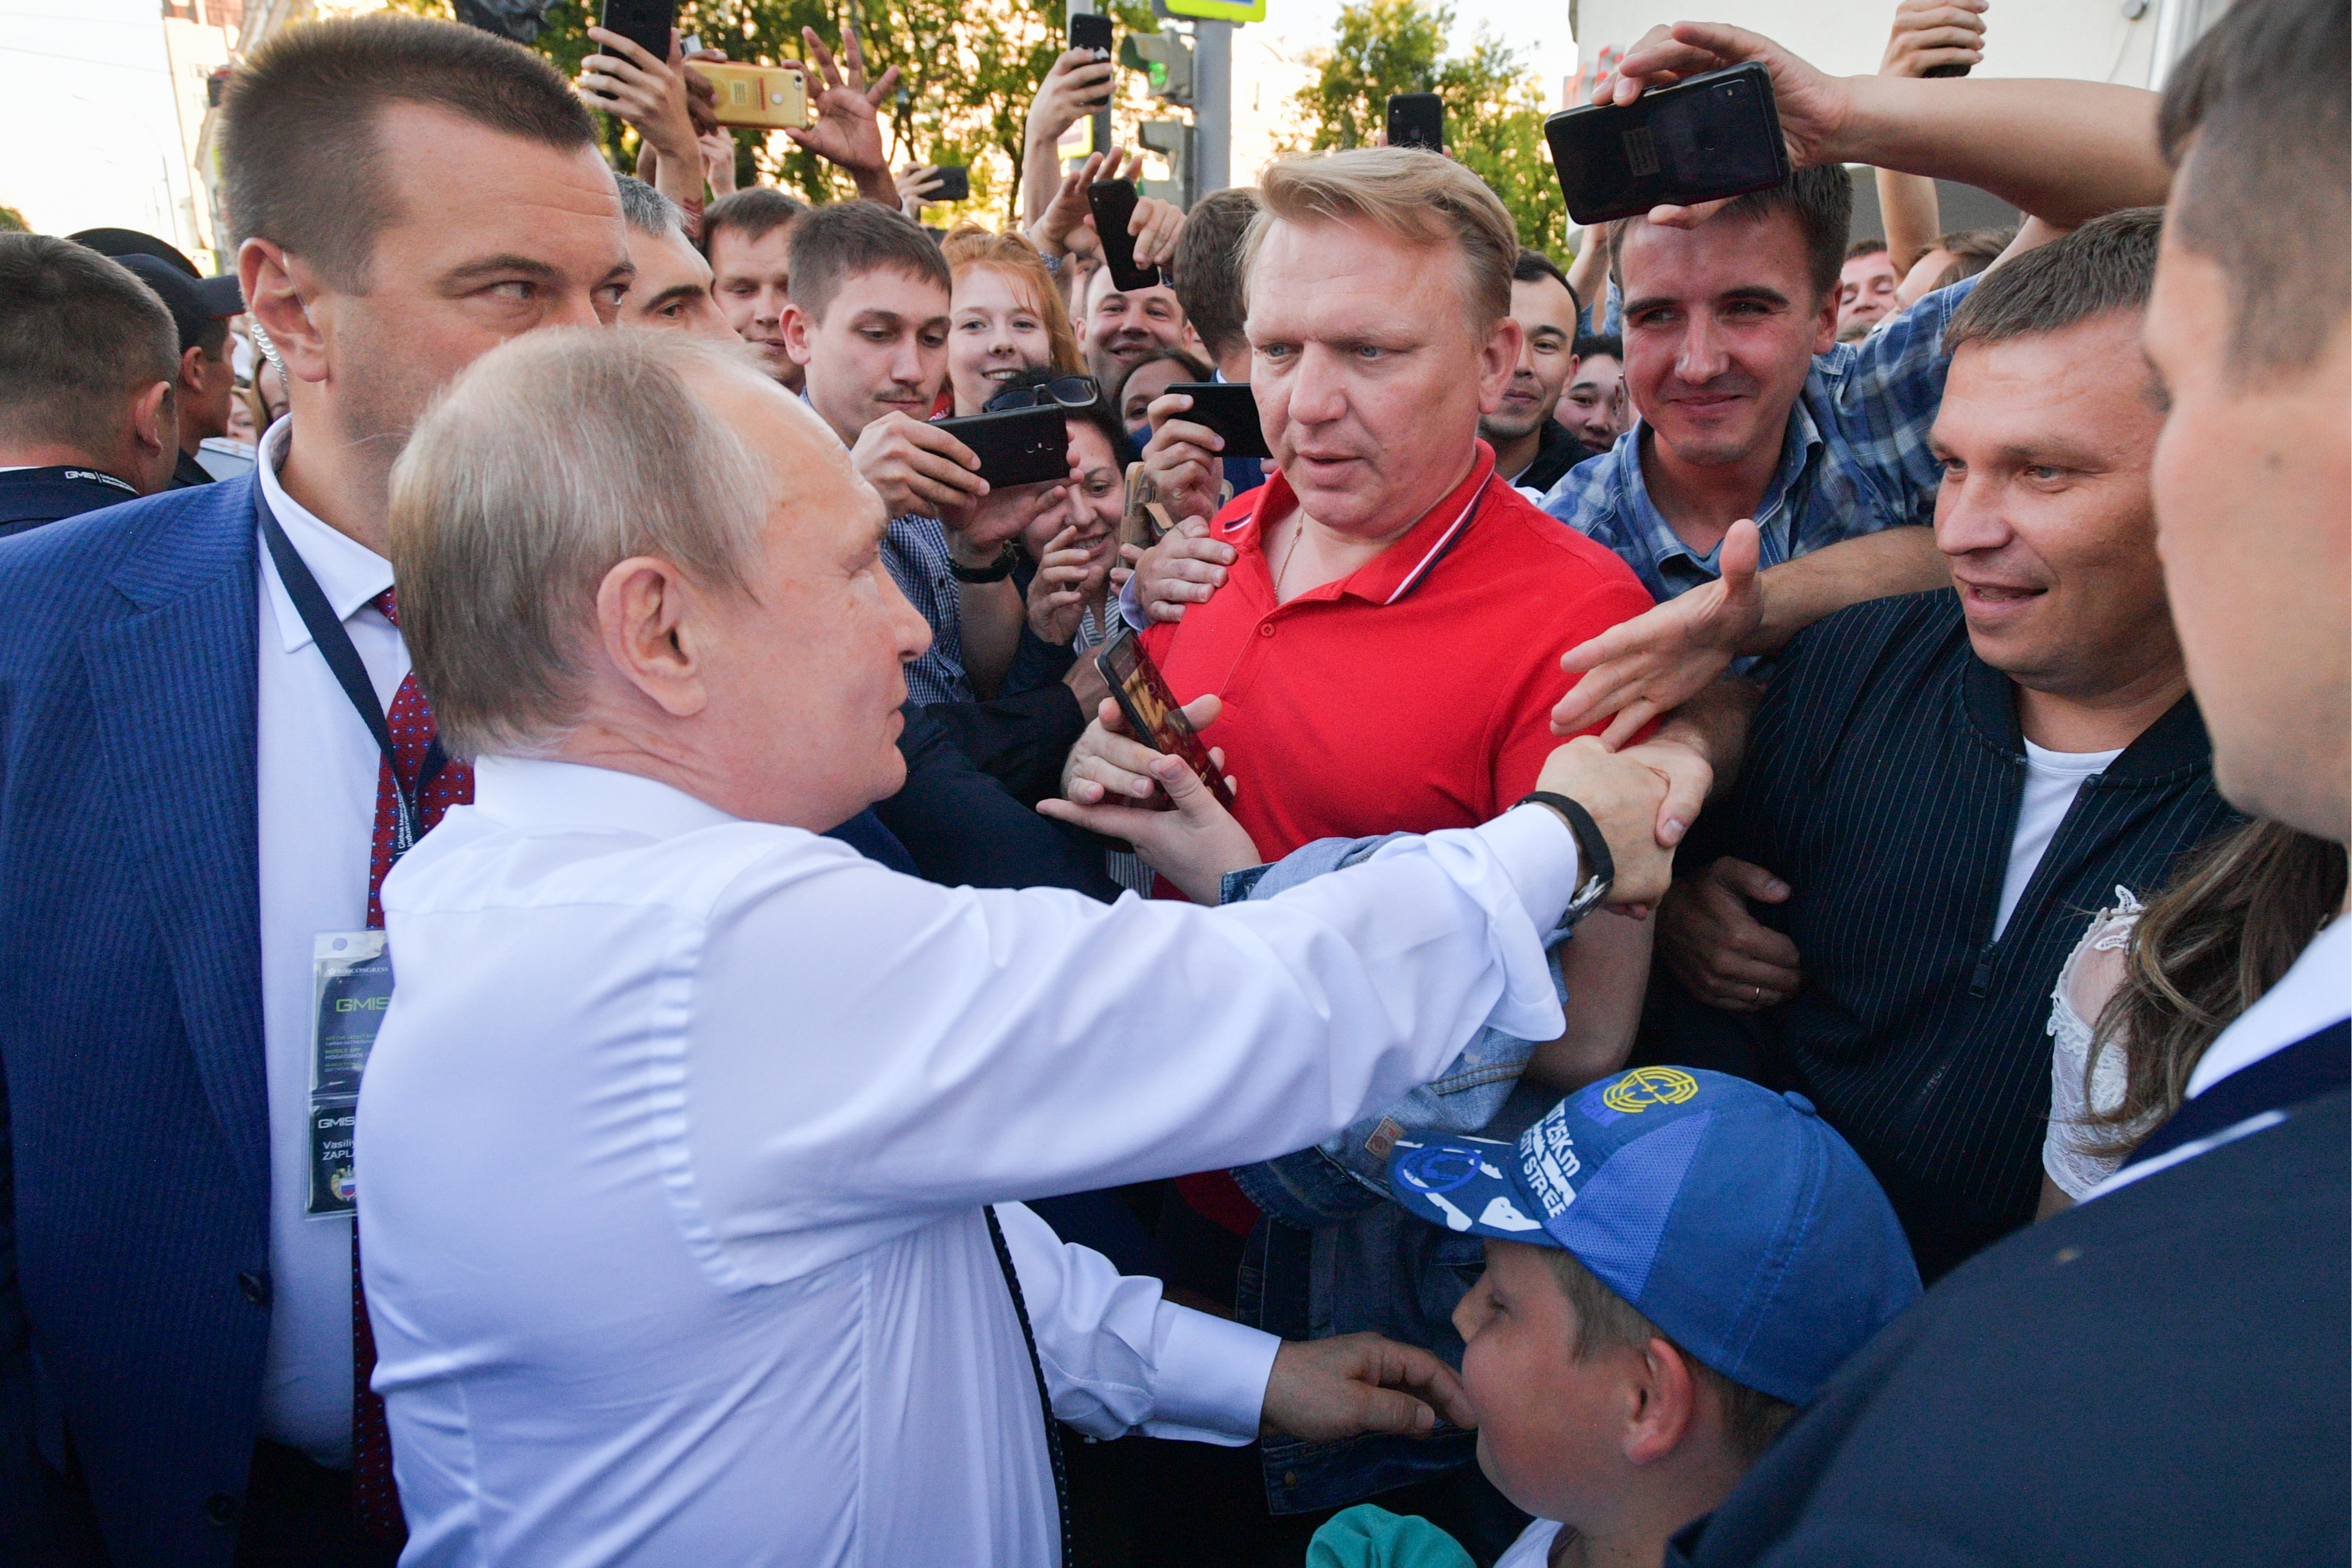 В мире интересного новости дня. Охрана Путина Екатеринбург. Фотографии Путина с народом.